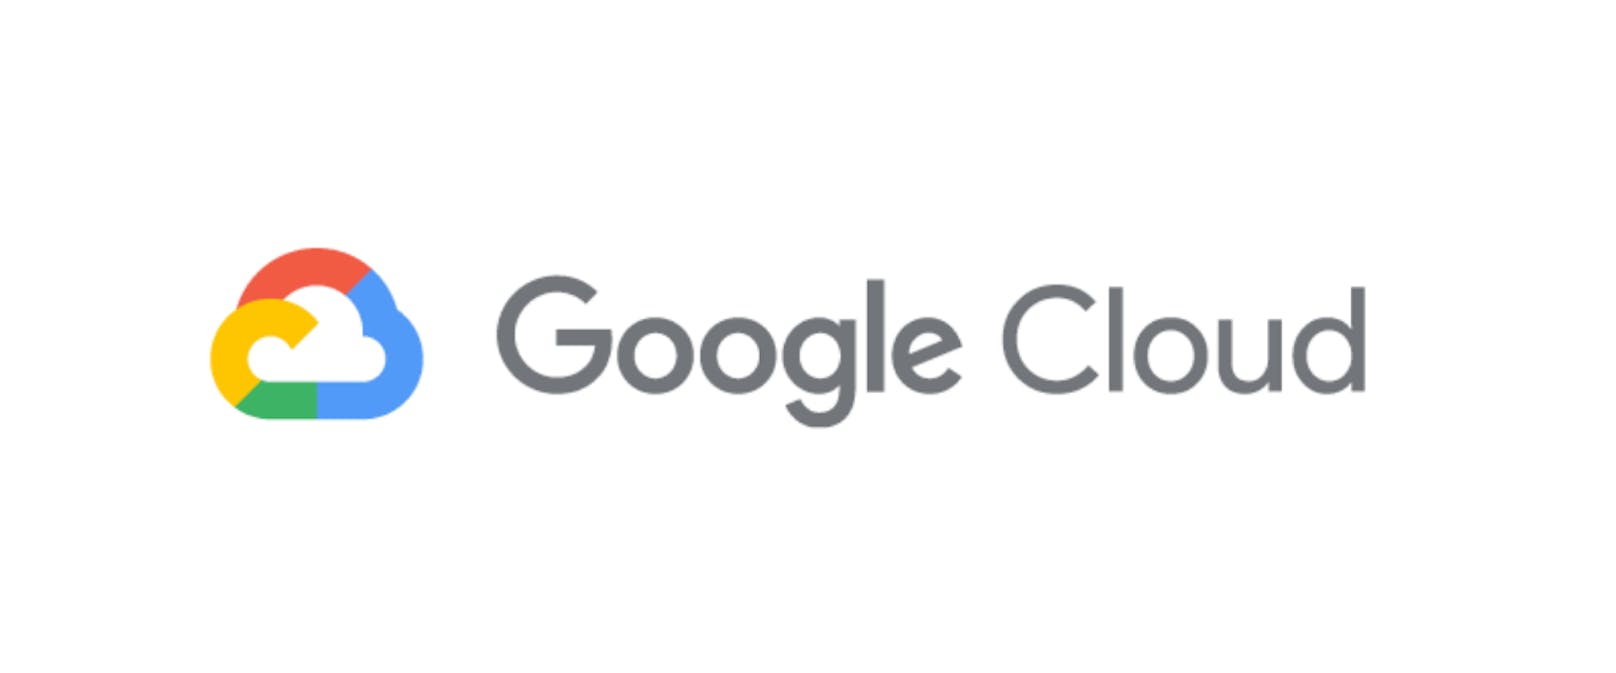 Google Cloud beschleunigt die digitale Transformation der Automobil-Branche.